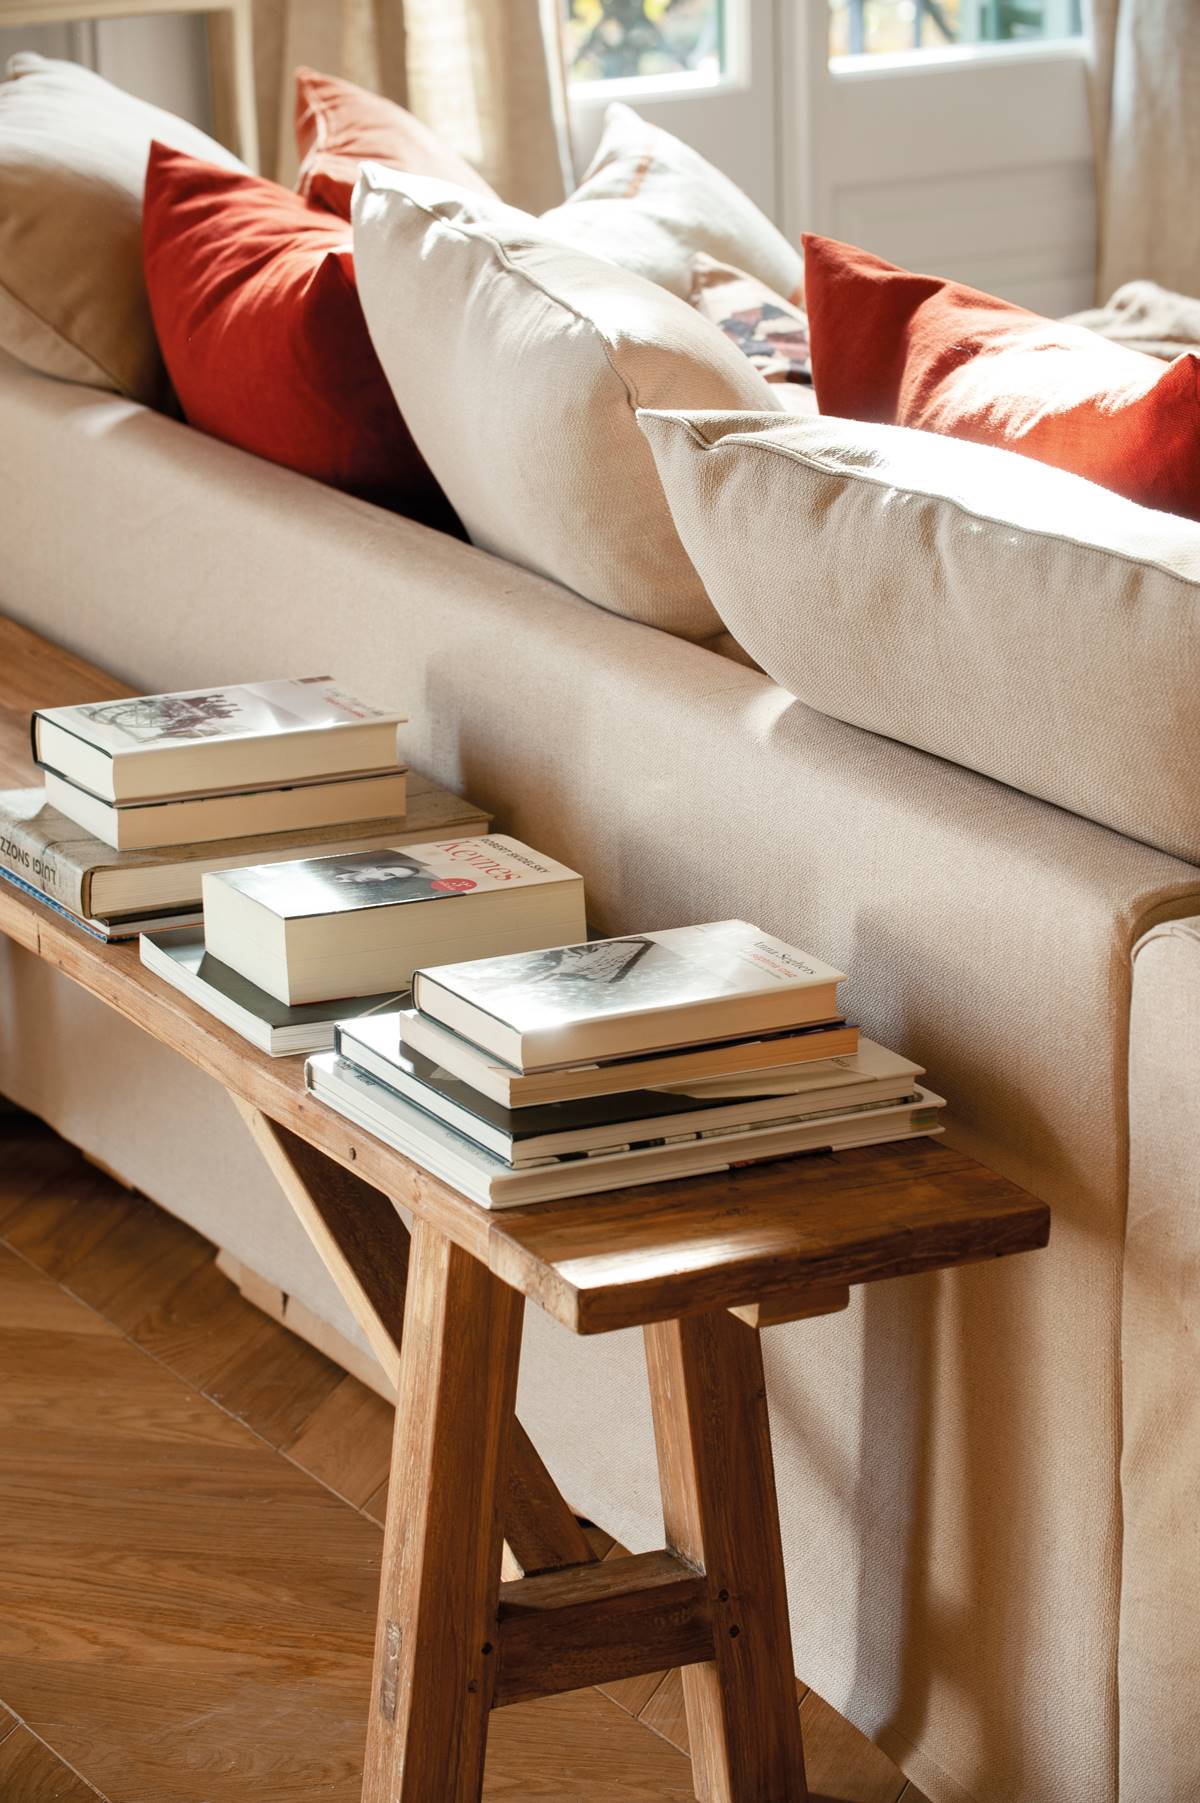 Banco de madera con libros detrás del sofá.